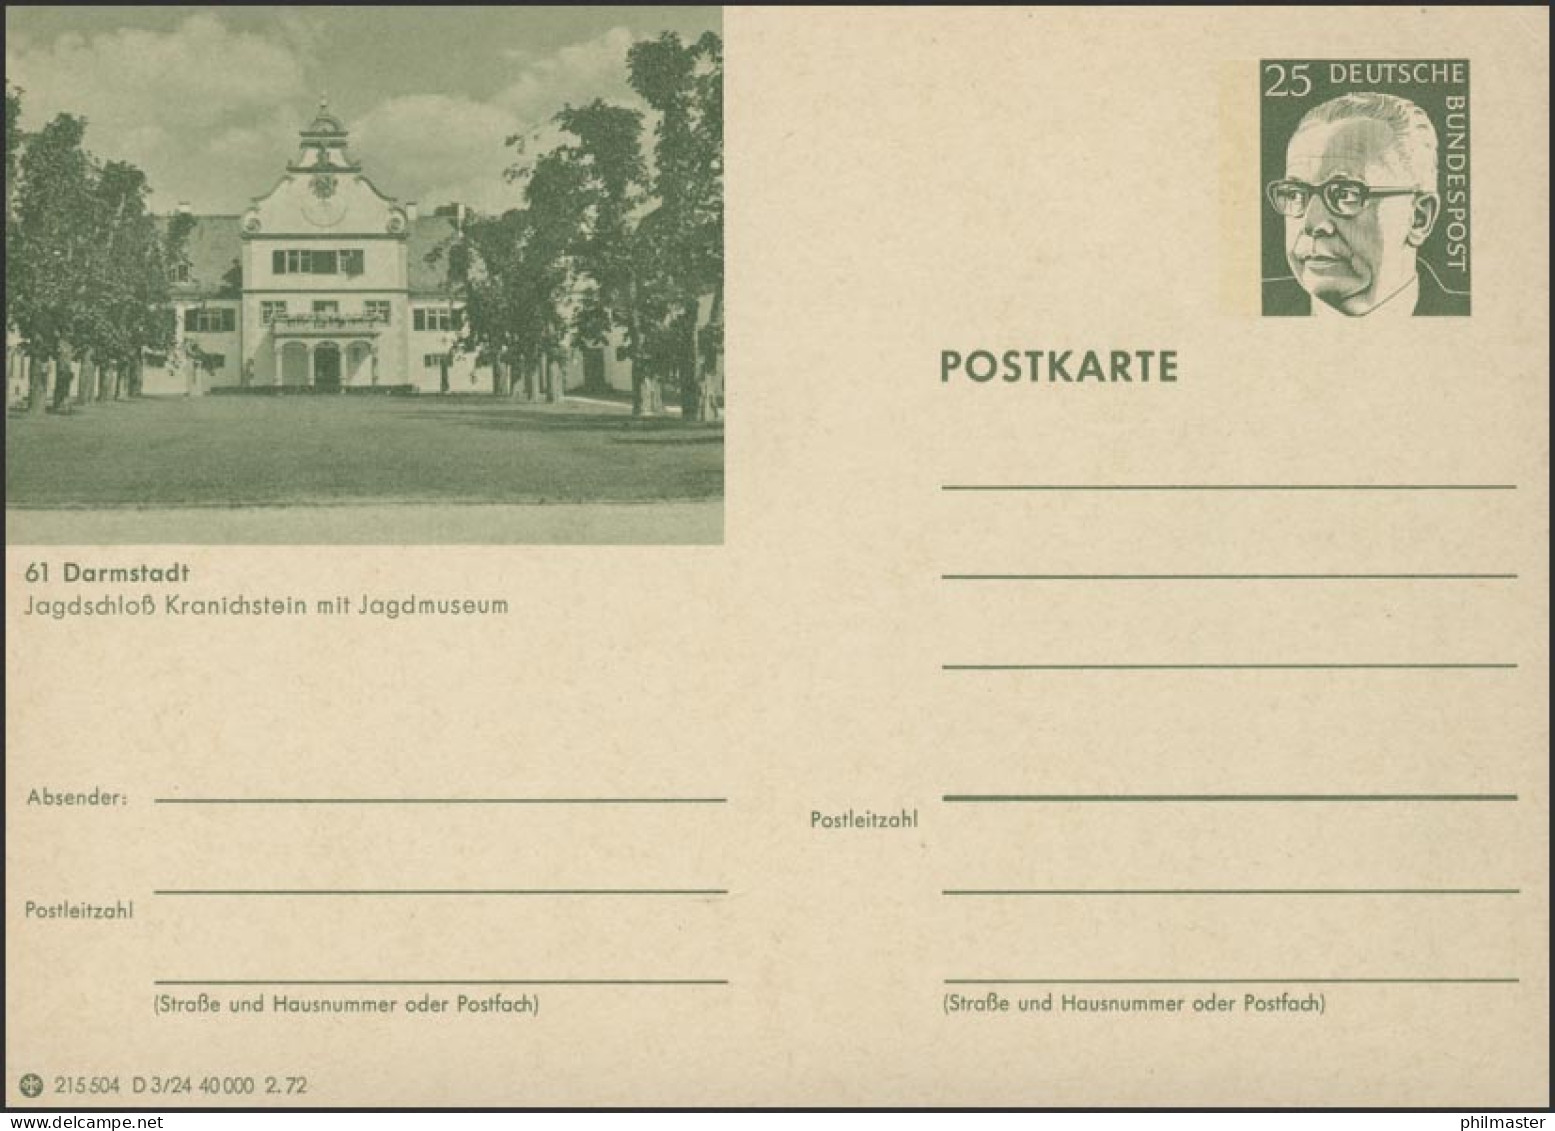 P107-D03/024 61 Darmstadt, Jagdschloß Kranichstein** - Illustrated Postcards - Mint